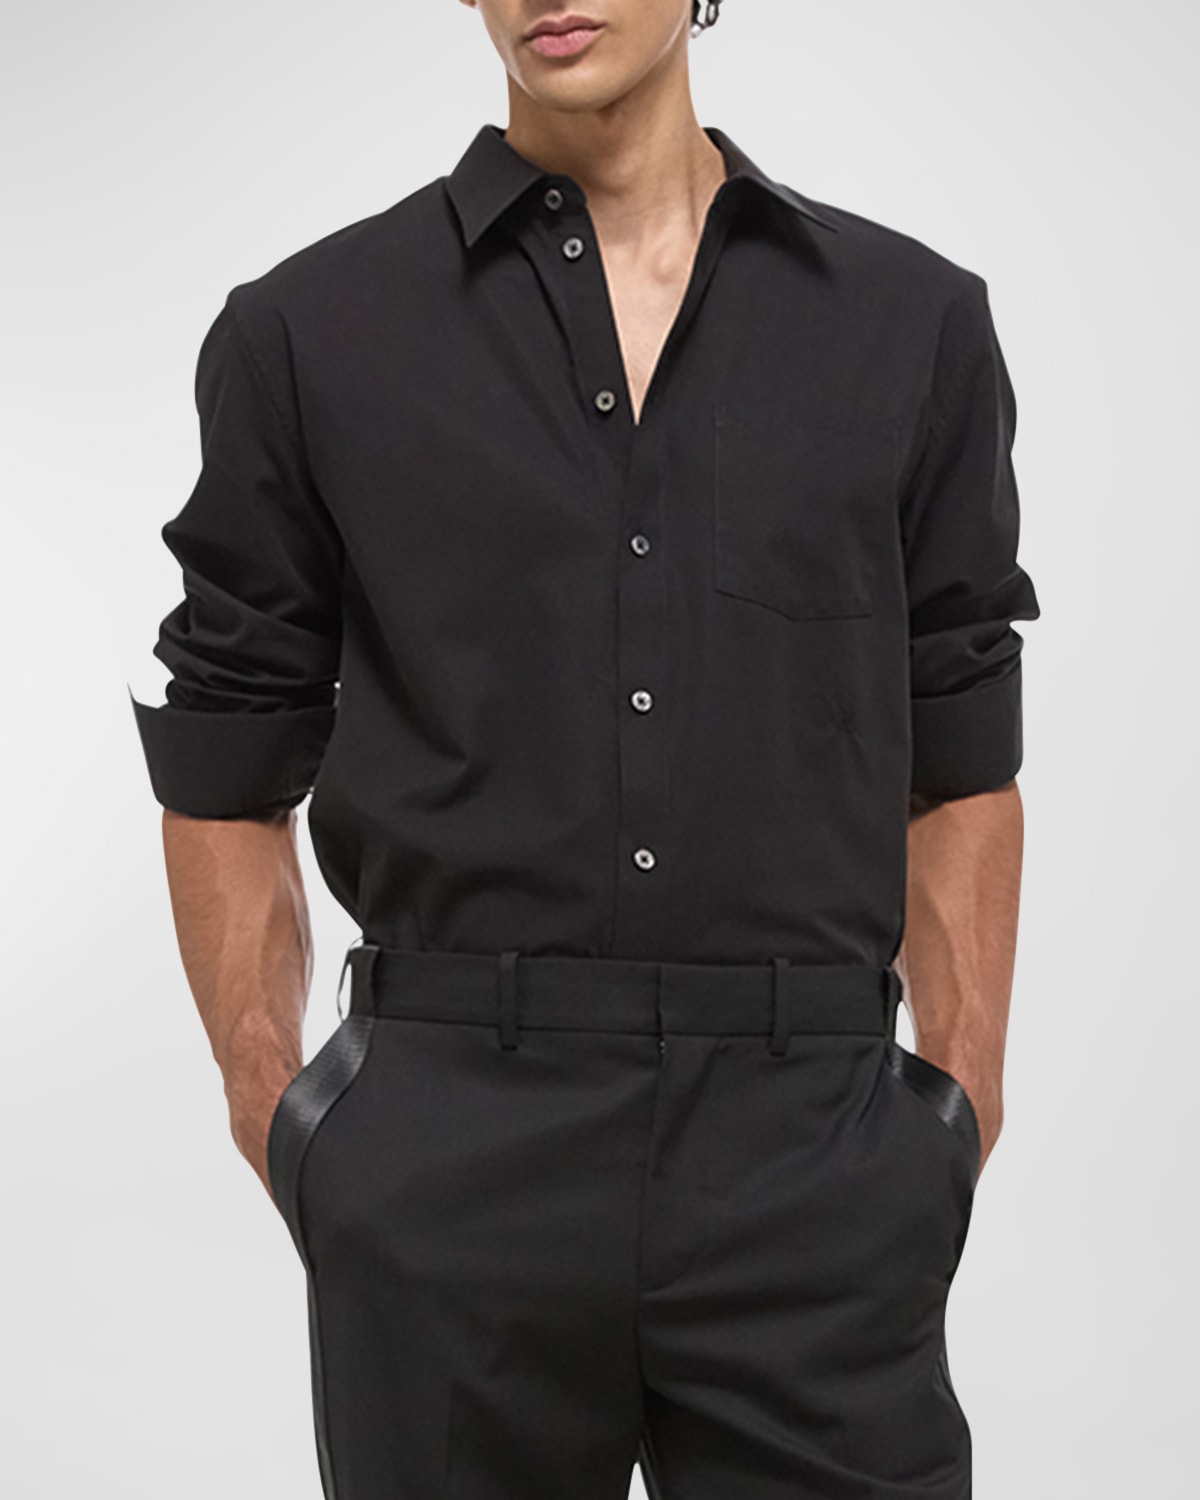 Men's Classic Button-Down Soft Cotton Shirt